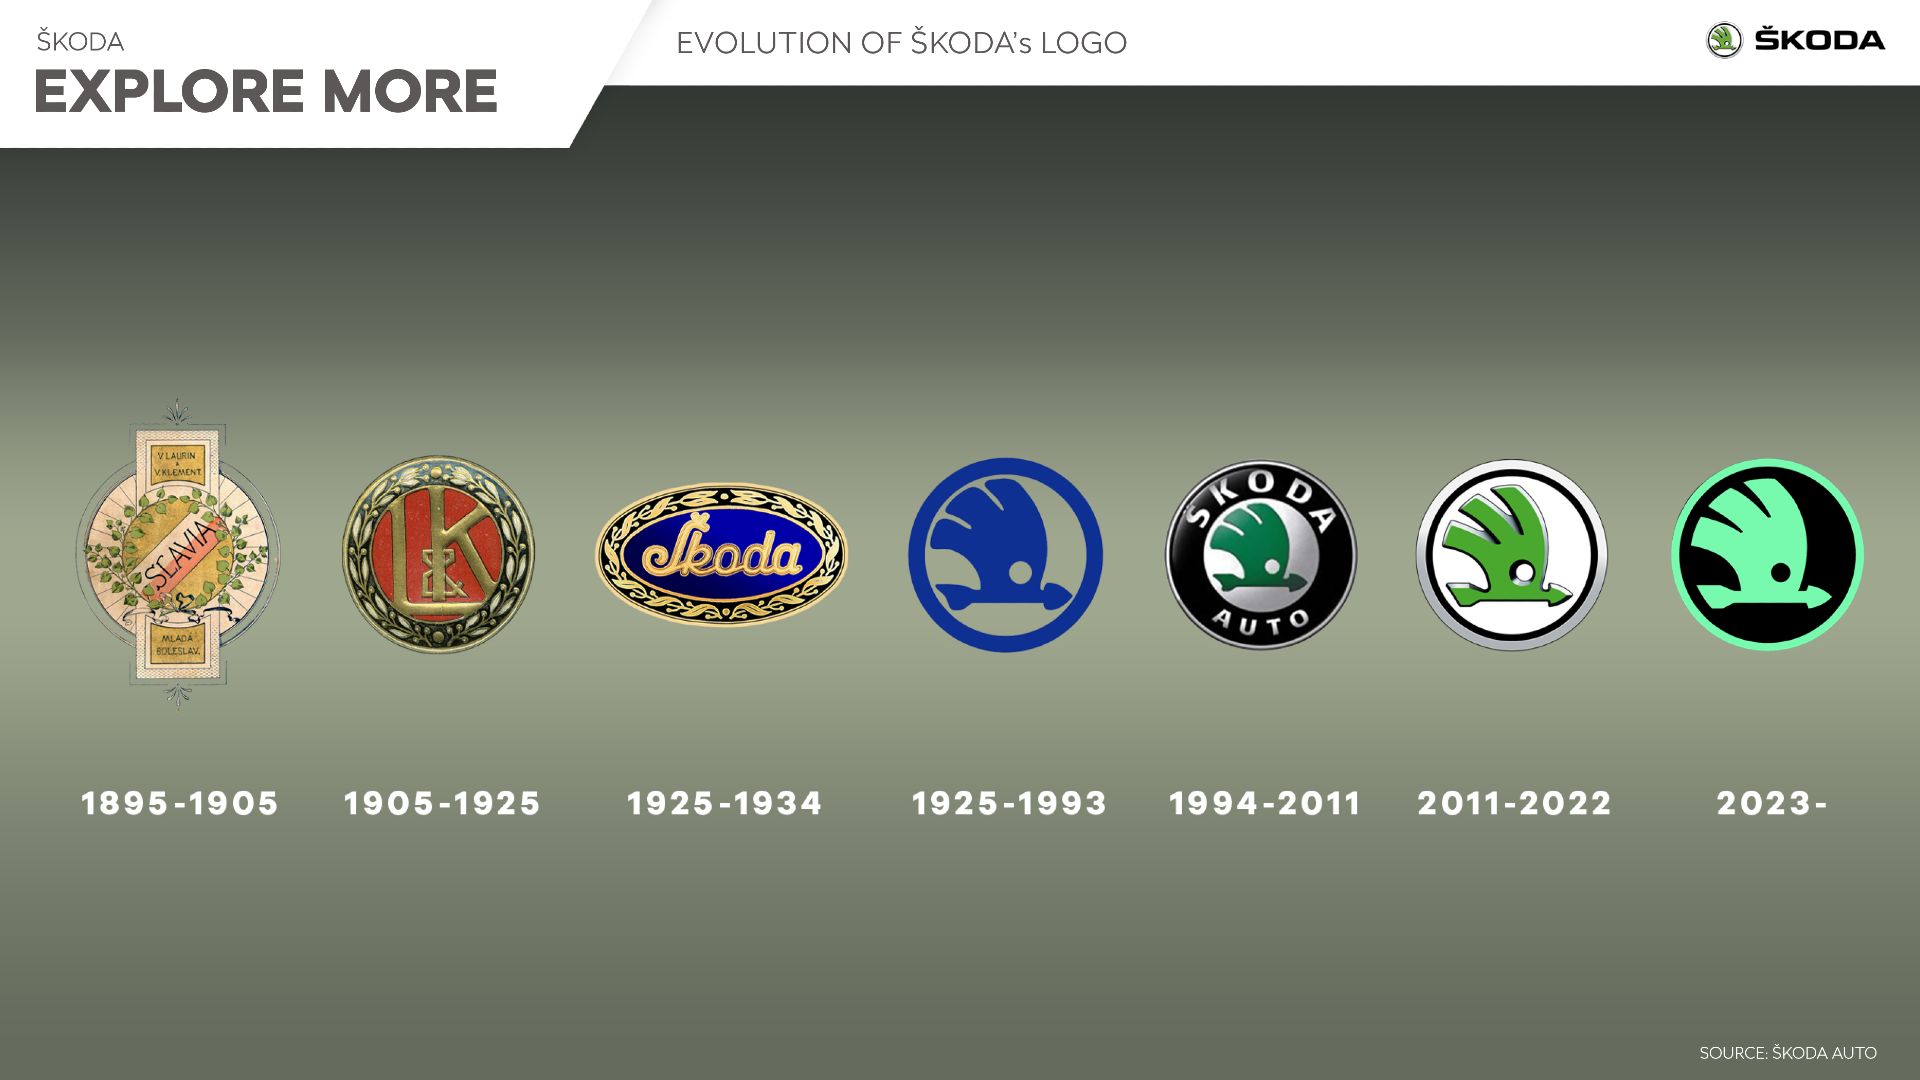 Evolución del logotipo de Skoda